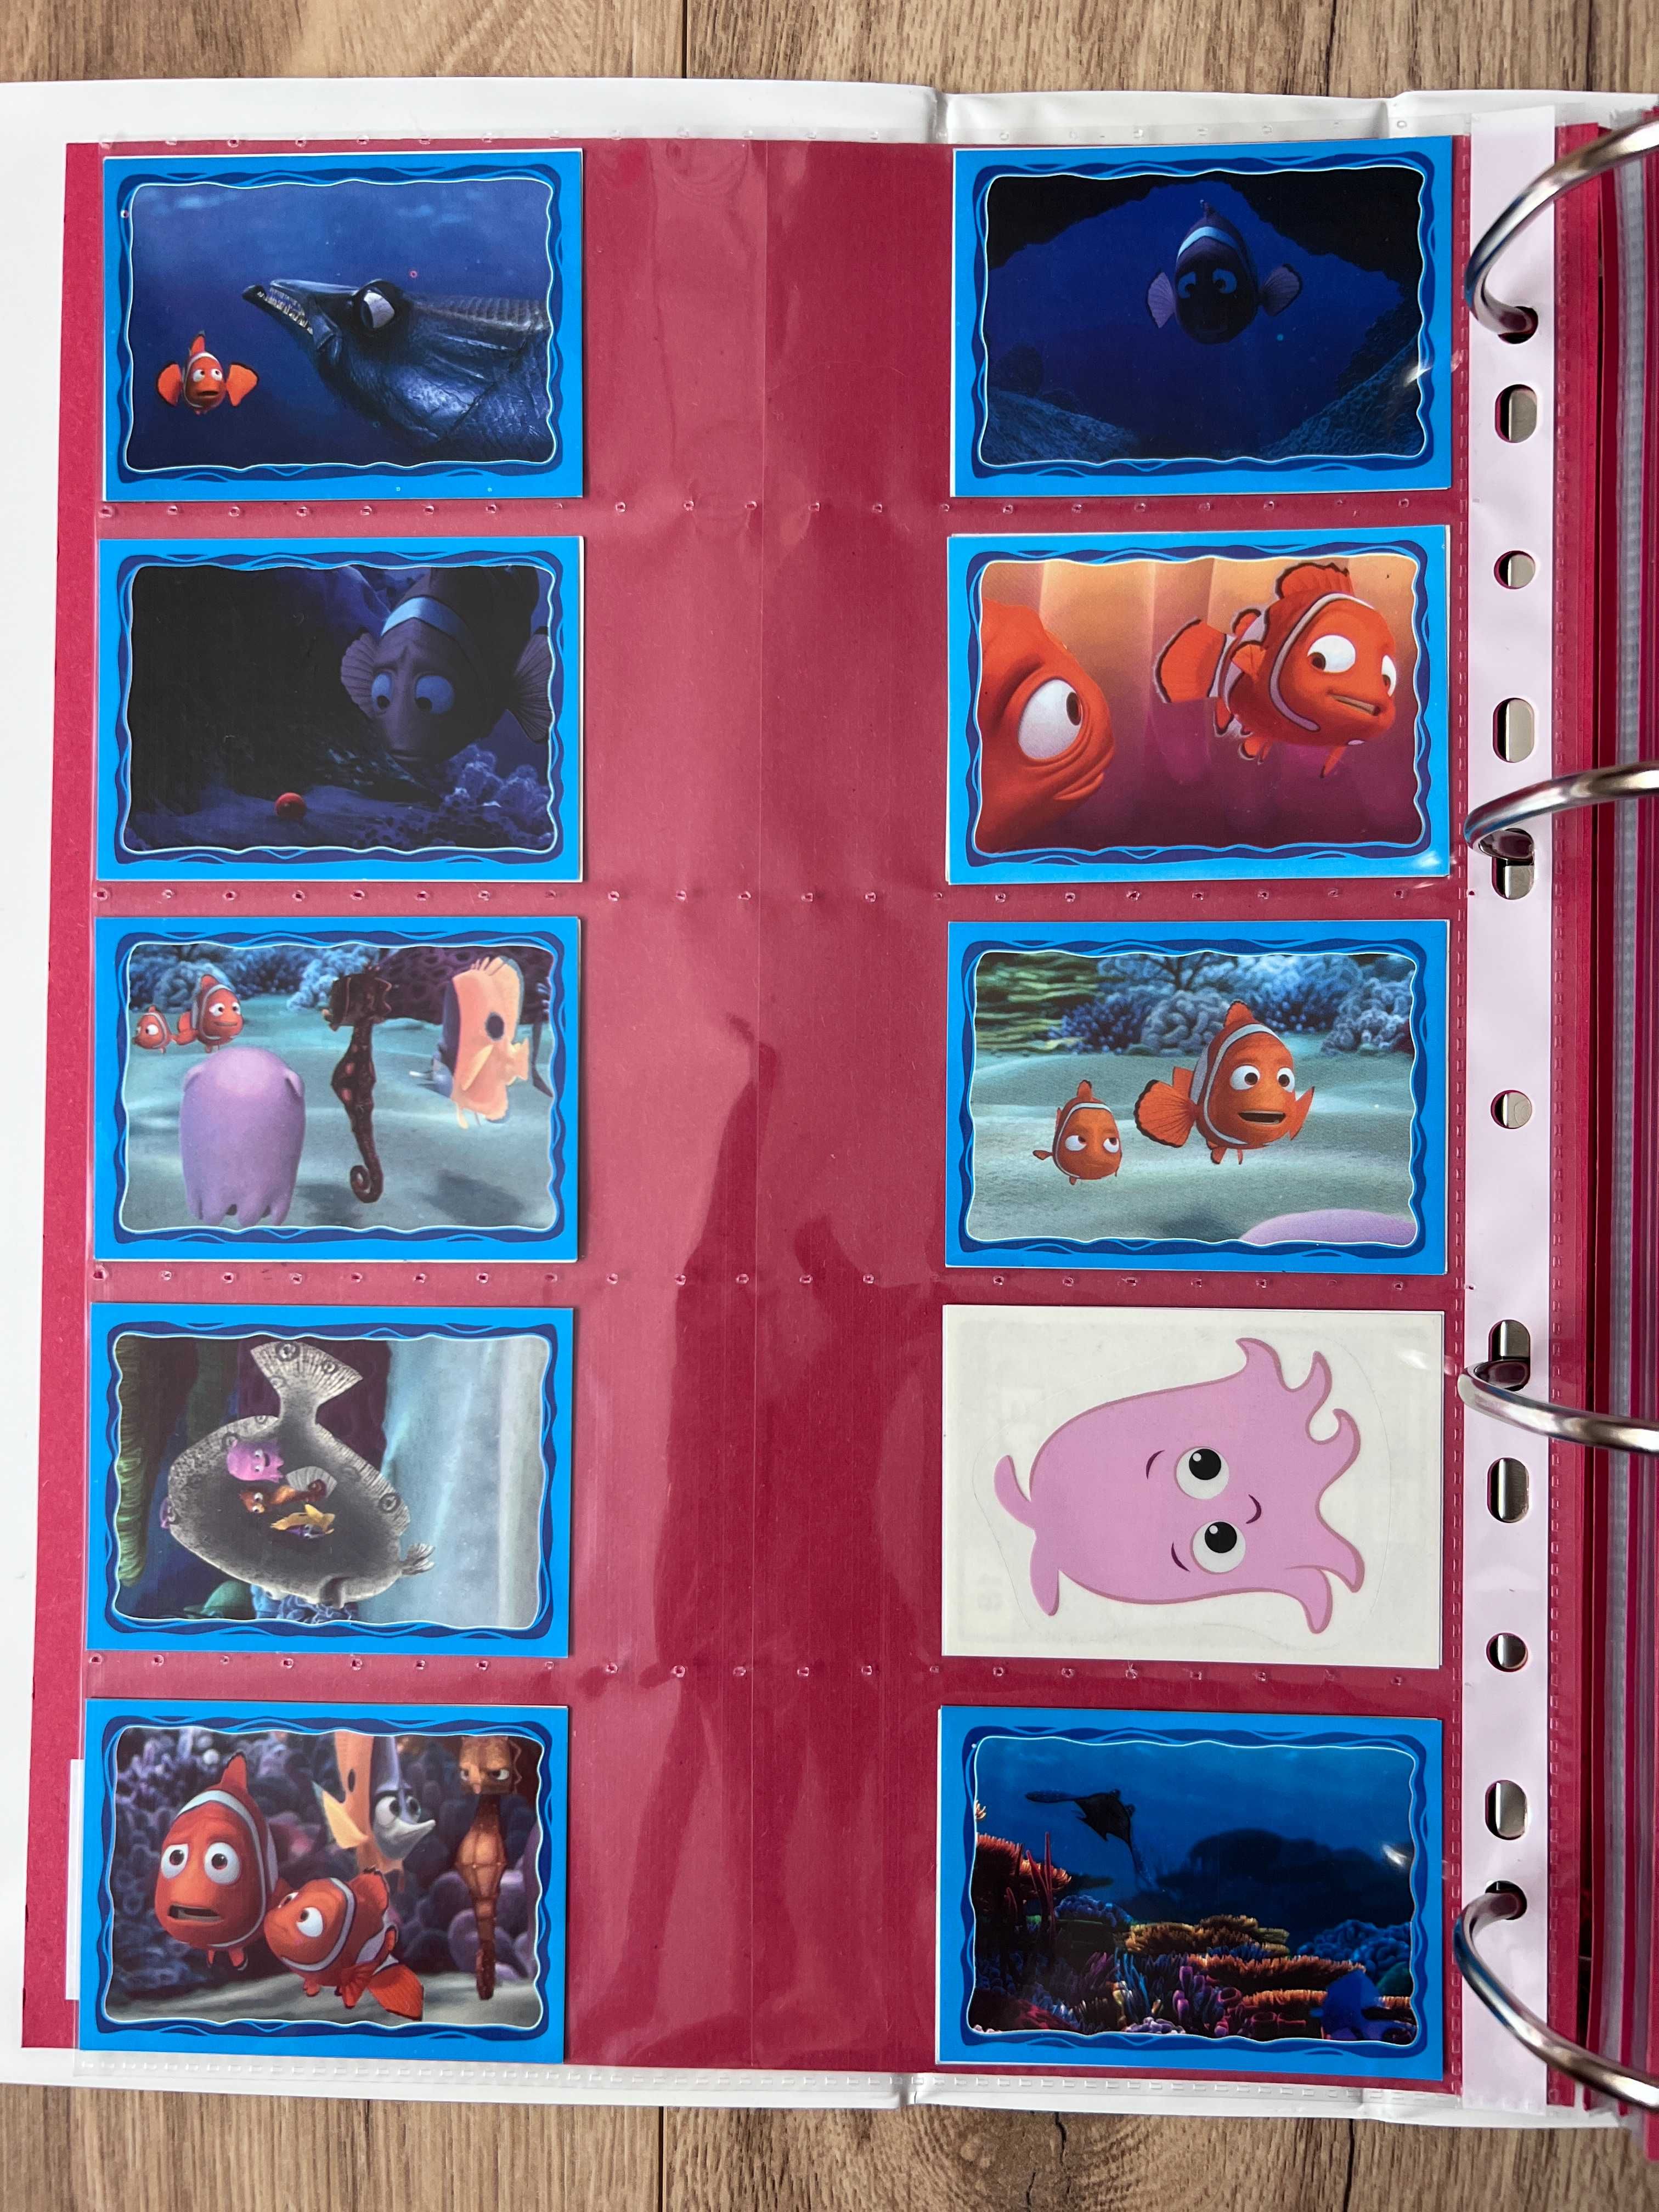 Stickere Panini seria Finding Nemo 2003